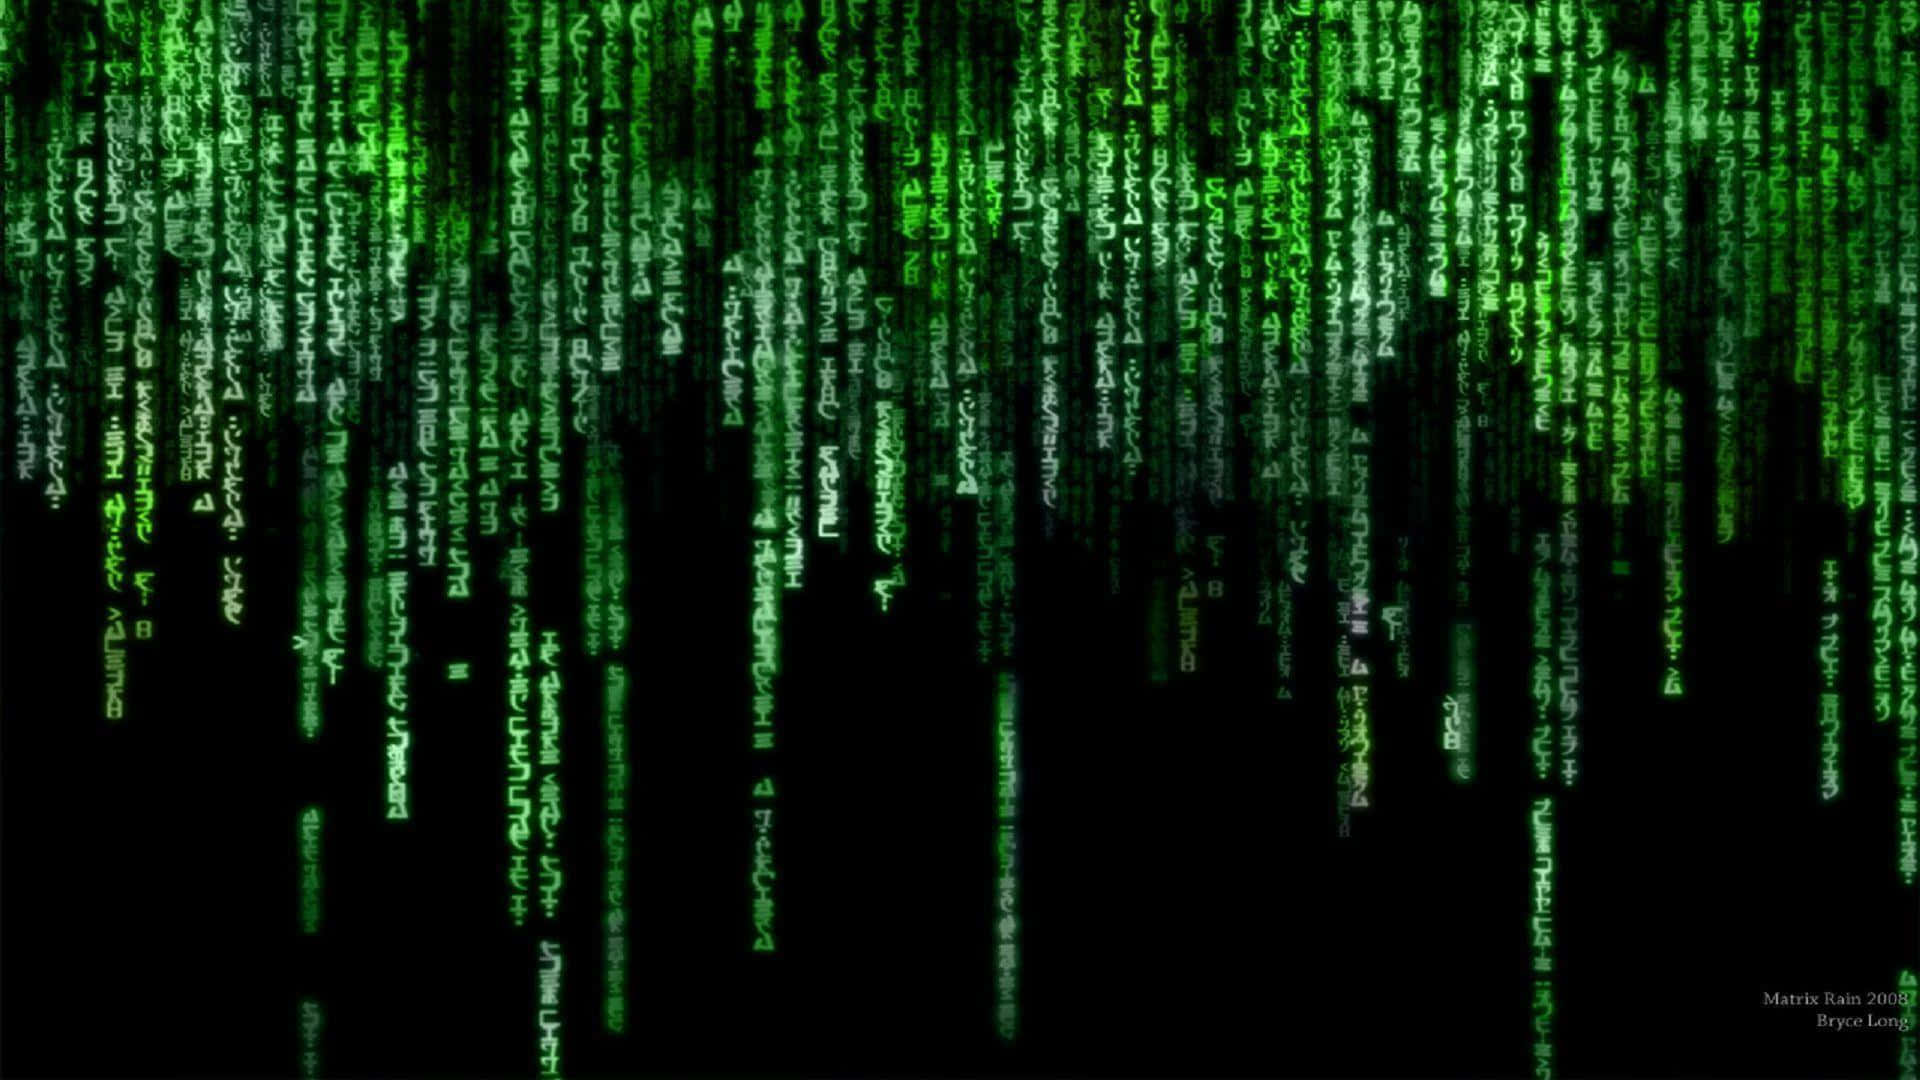 Pixlaraccelererar Som Matrix I Denna Fängslande Zoom-bakgrund.